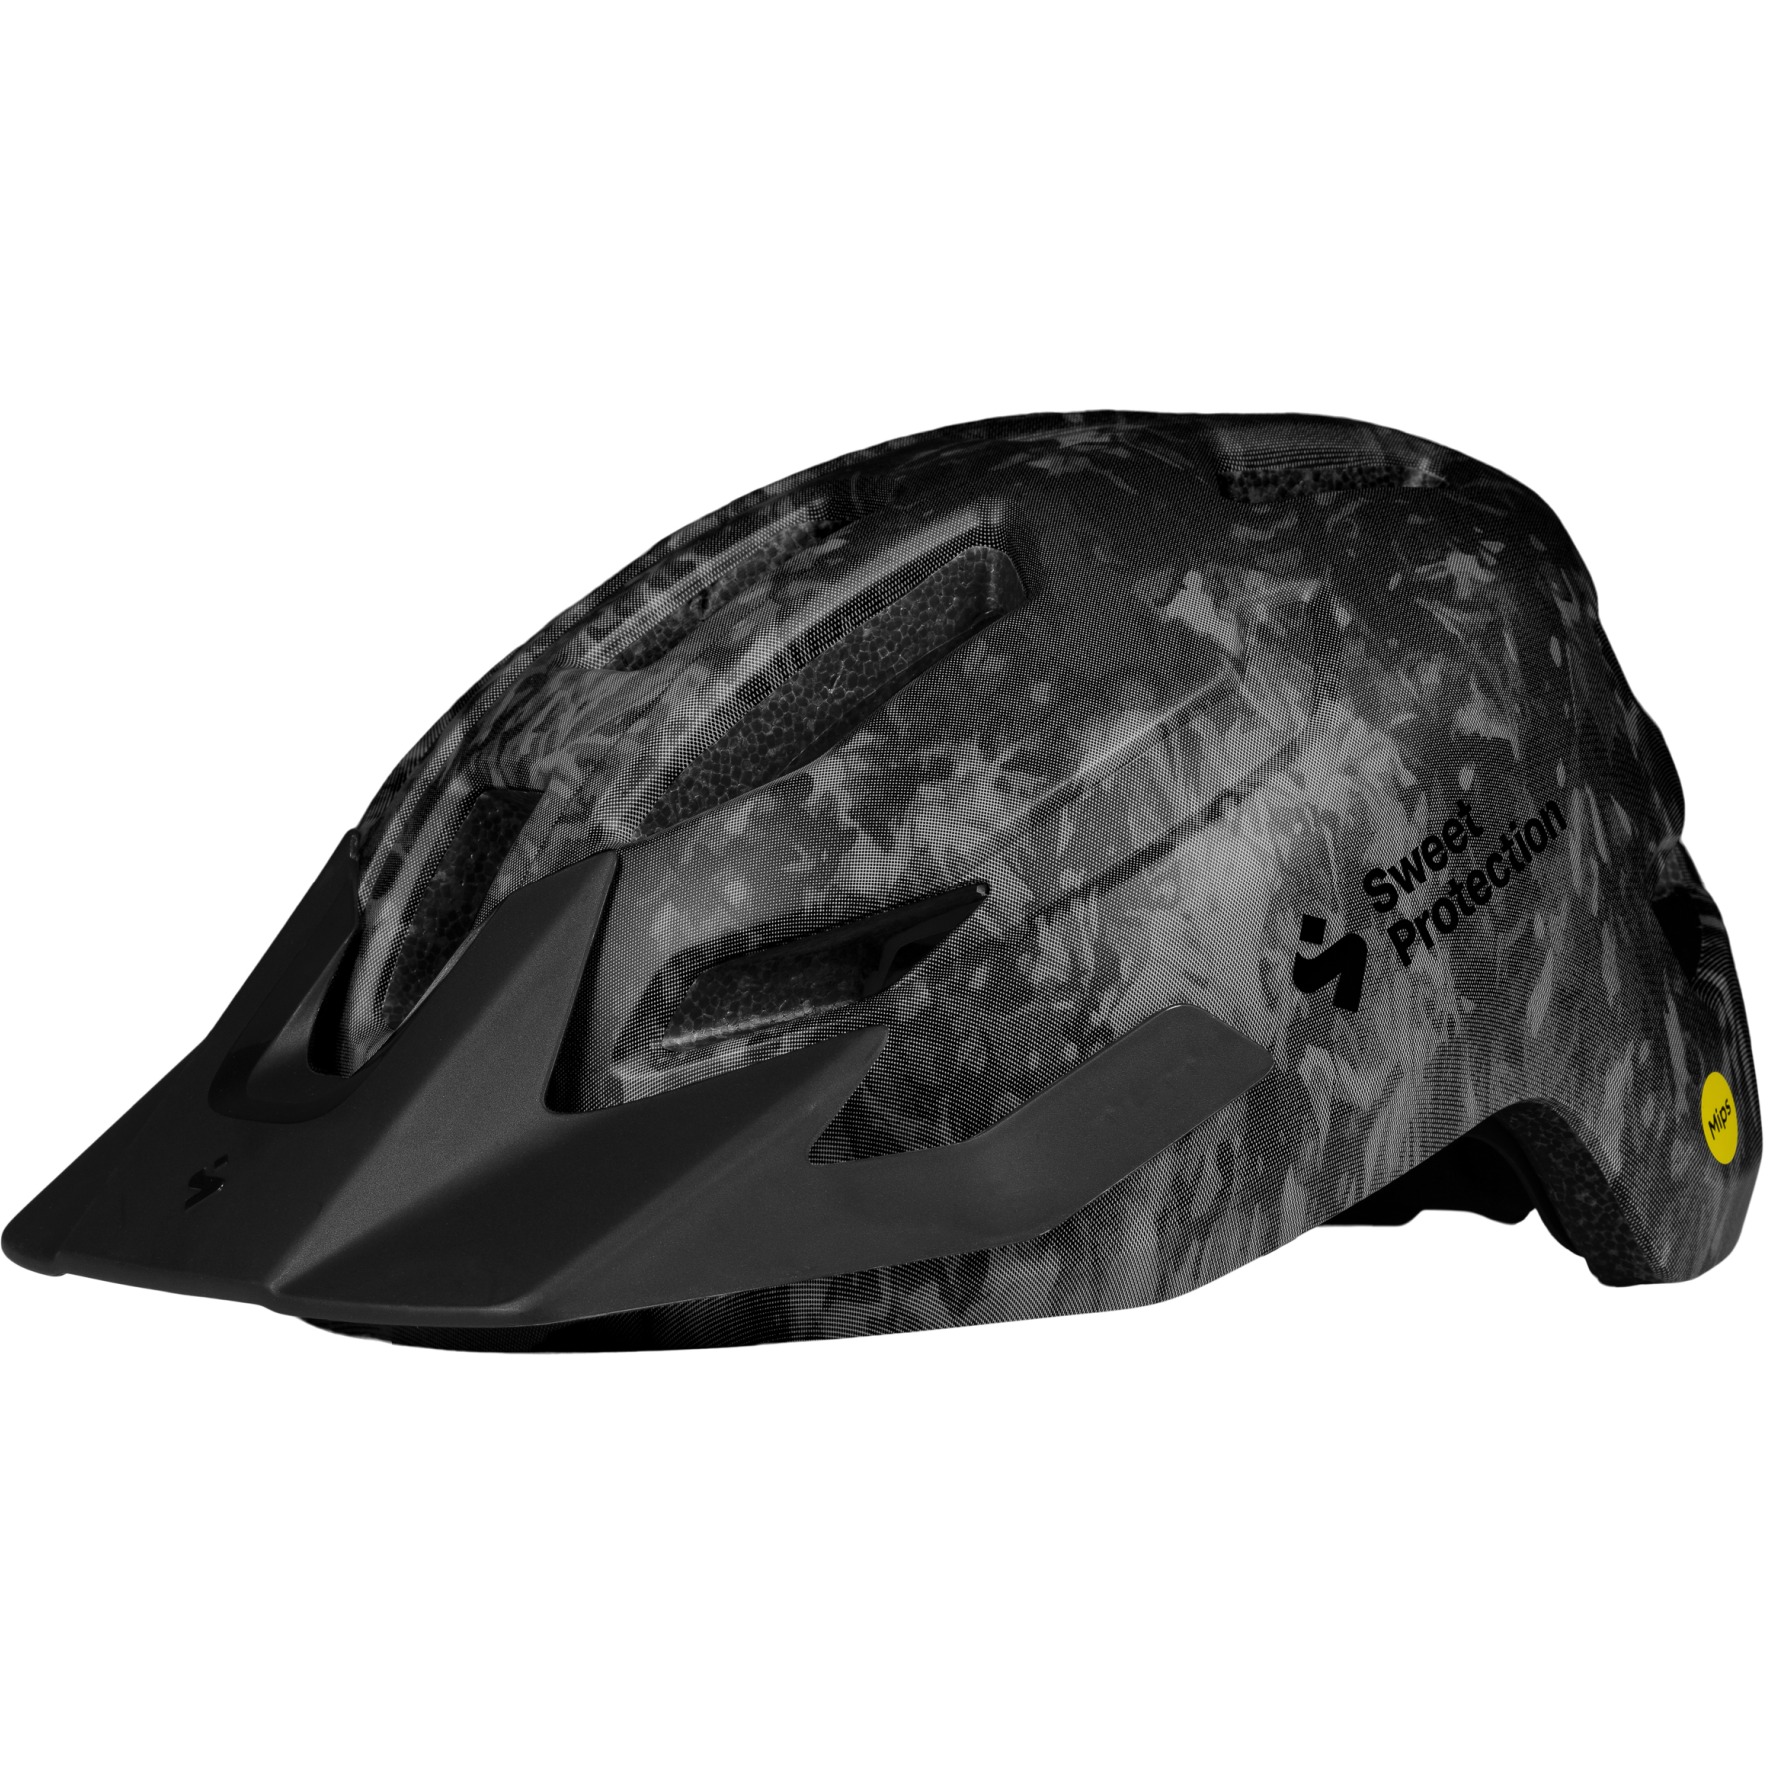 Produktbild von SWEET Protection Ripper MIPS Junior Helm - Black Tie